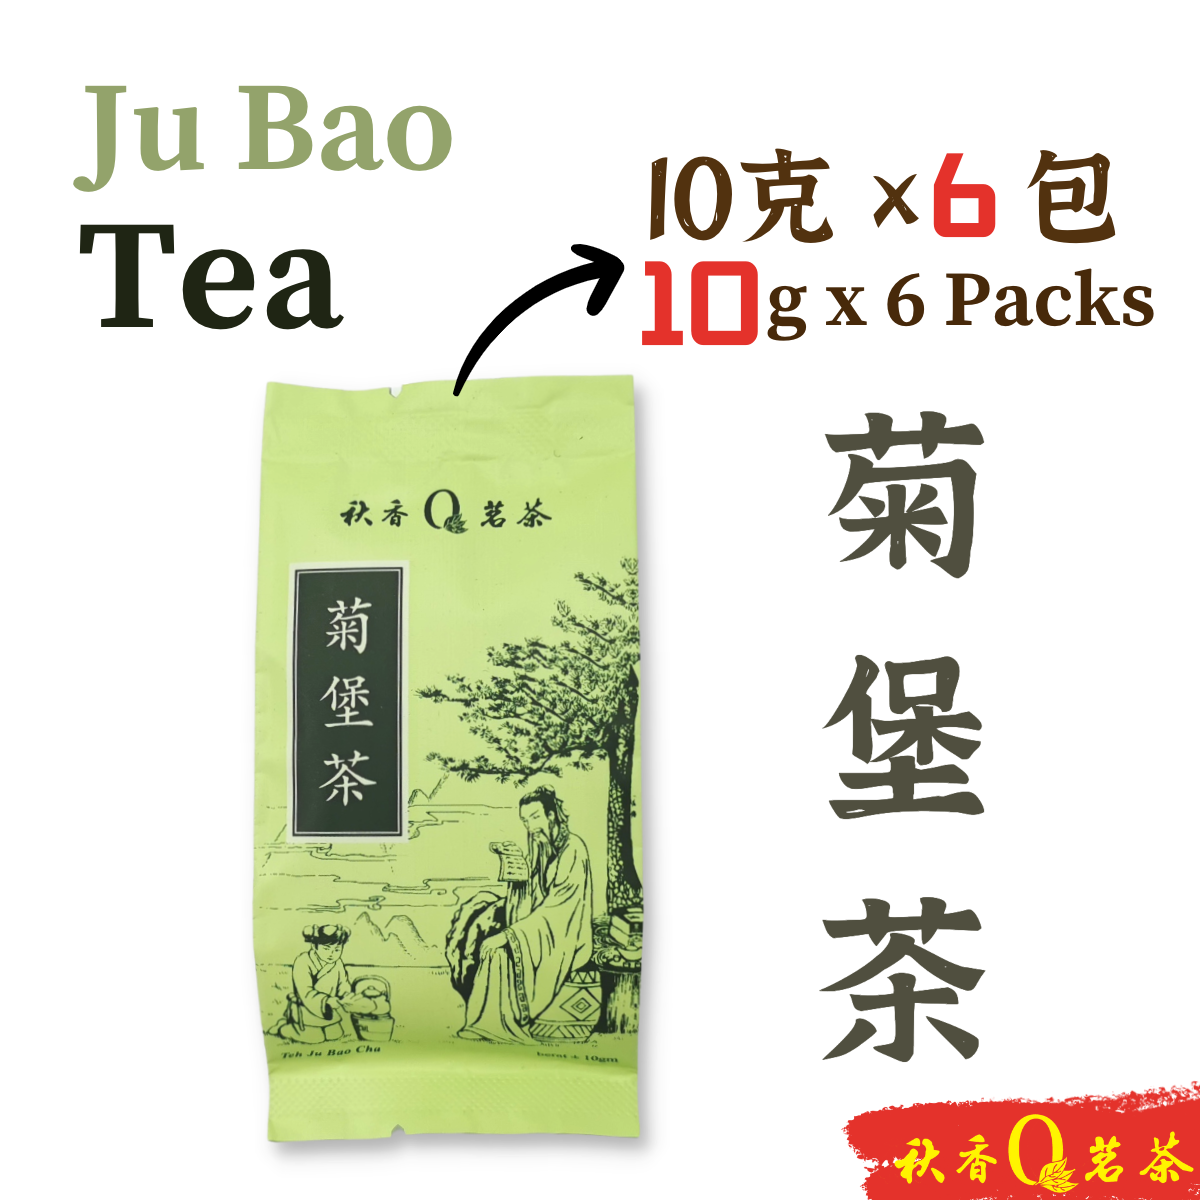 菊堡茶 Ju Bao Tea 【6 packs x 10g】| 【调配茶 Blended tea】